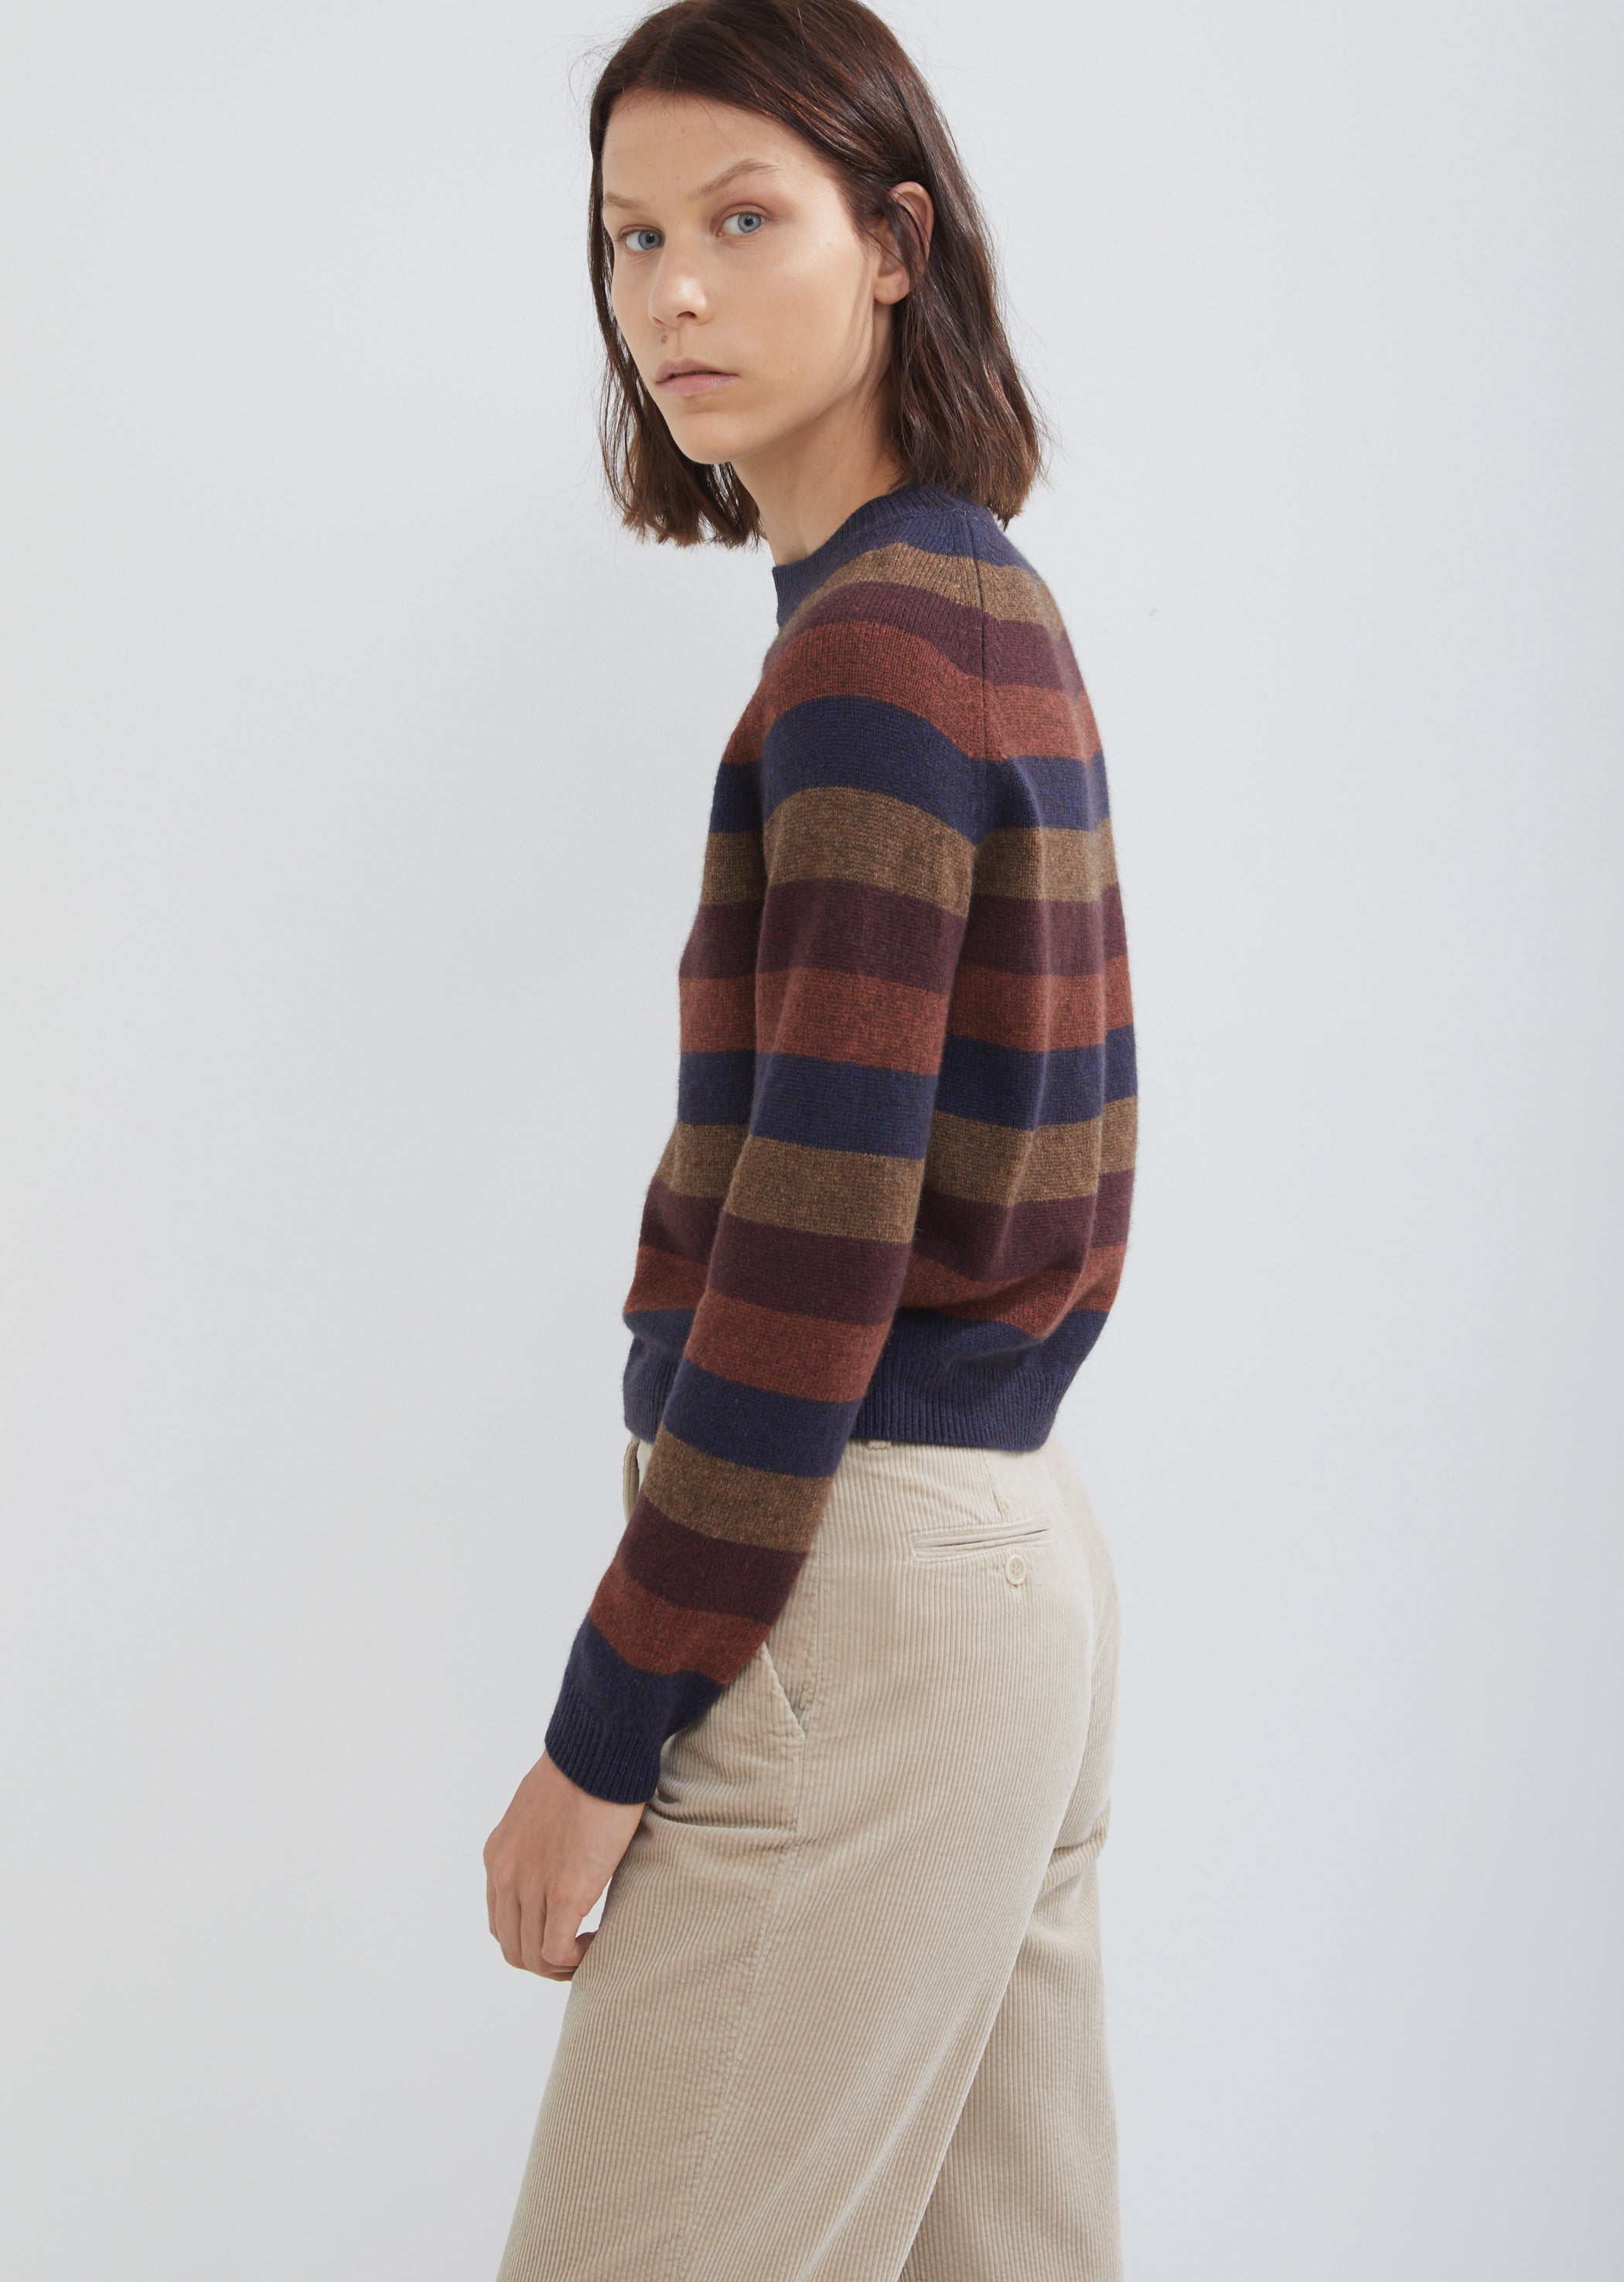 Sweater by La Garçonne